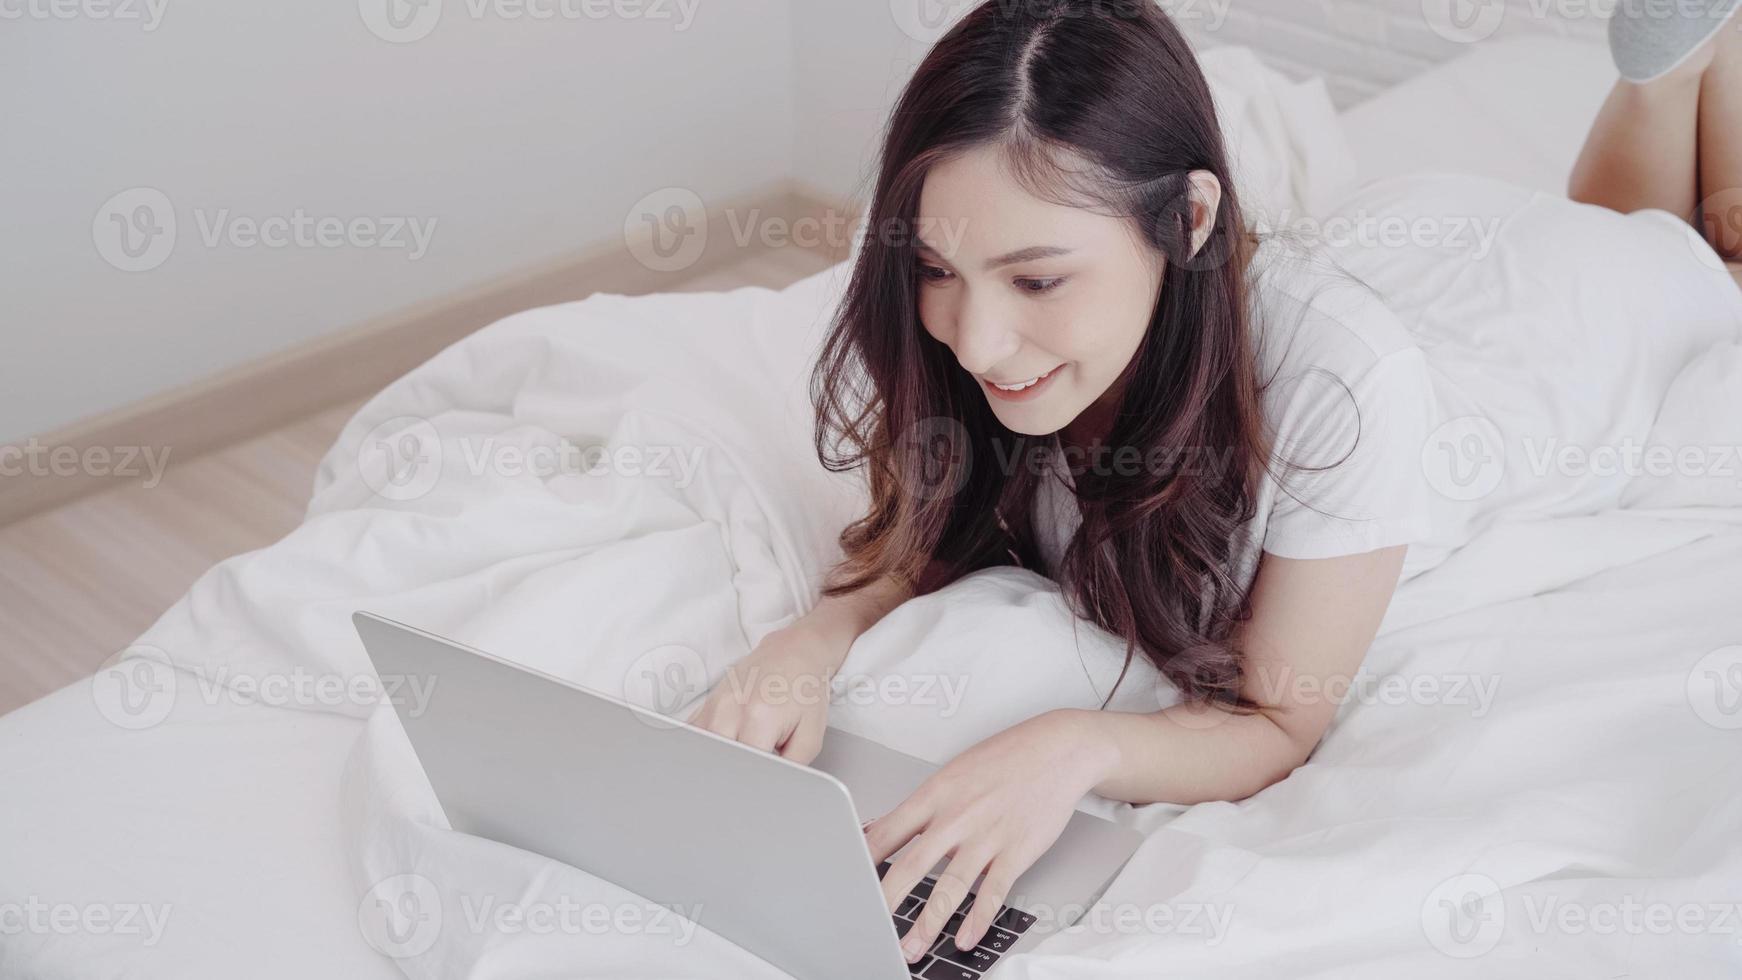 Porträt einer schönen attraktiven asiatischen Frau, die Computer oder Laptop verwendet und Musik hört, während sie auf dem Bett liegt, wenn sie sich zu Hause in ihrem Schlafzimmer entspannt. Lifestyle-Frauen, die das Konzept der Entspannungszeit zu Hause verwenden. foto